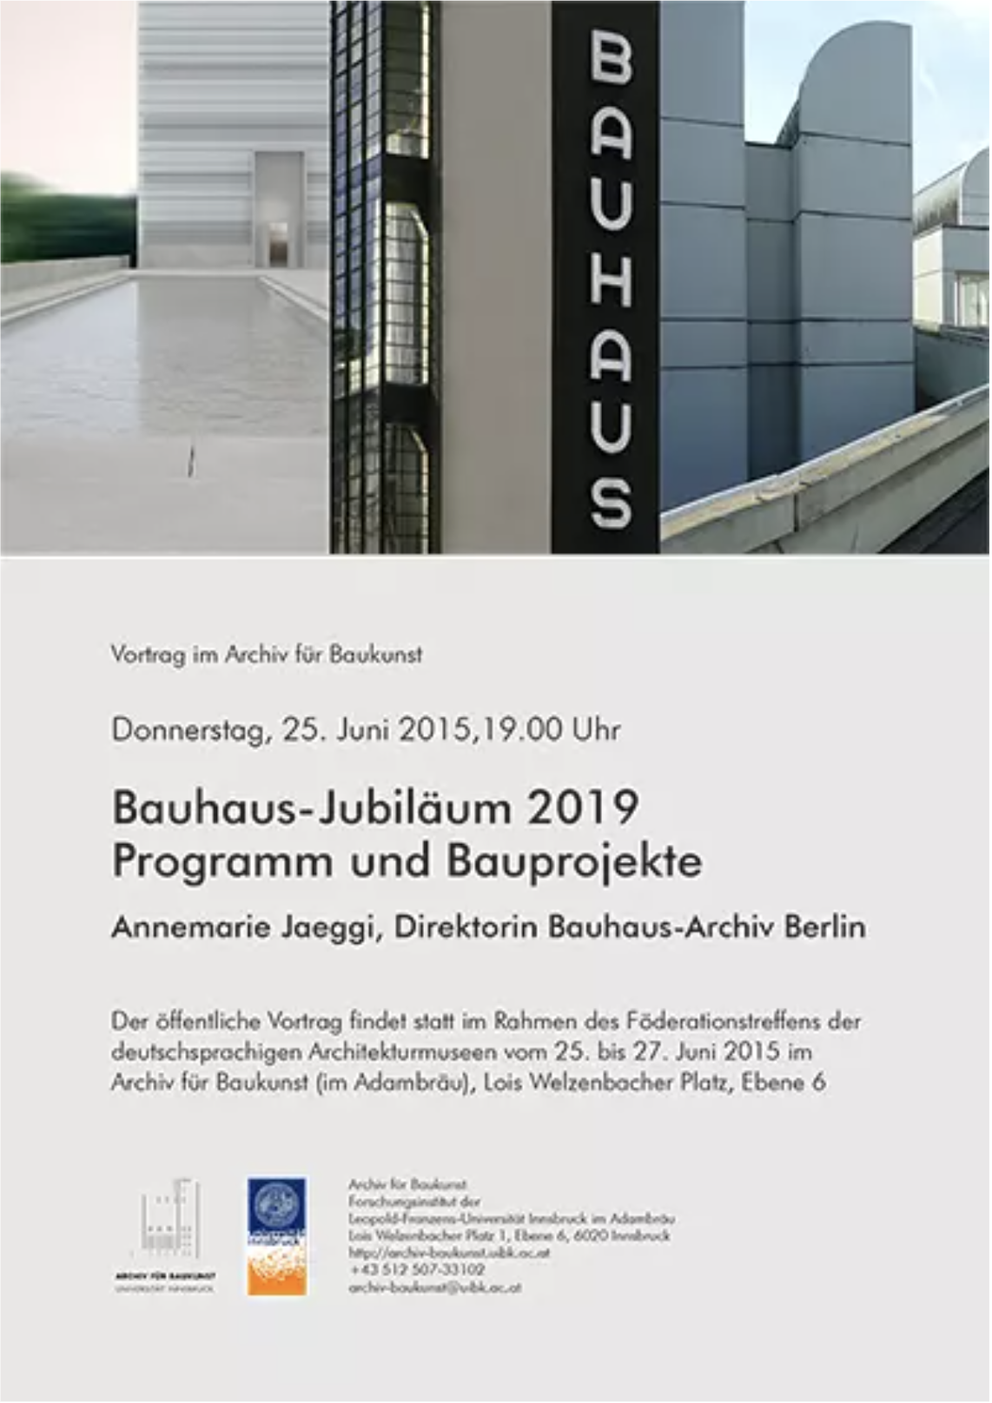 Archiv für Bau.Kunst.Geschichte, Föderationstreffen der Architektursammlungen 25. bis 27. Juni 2015.